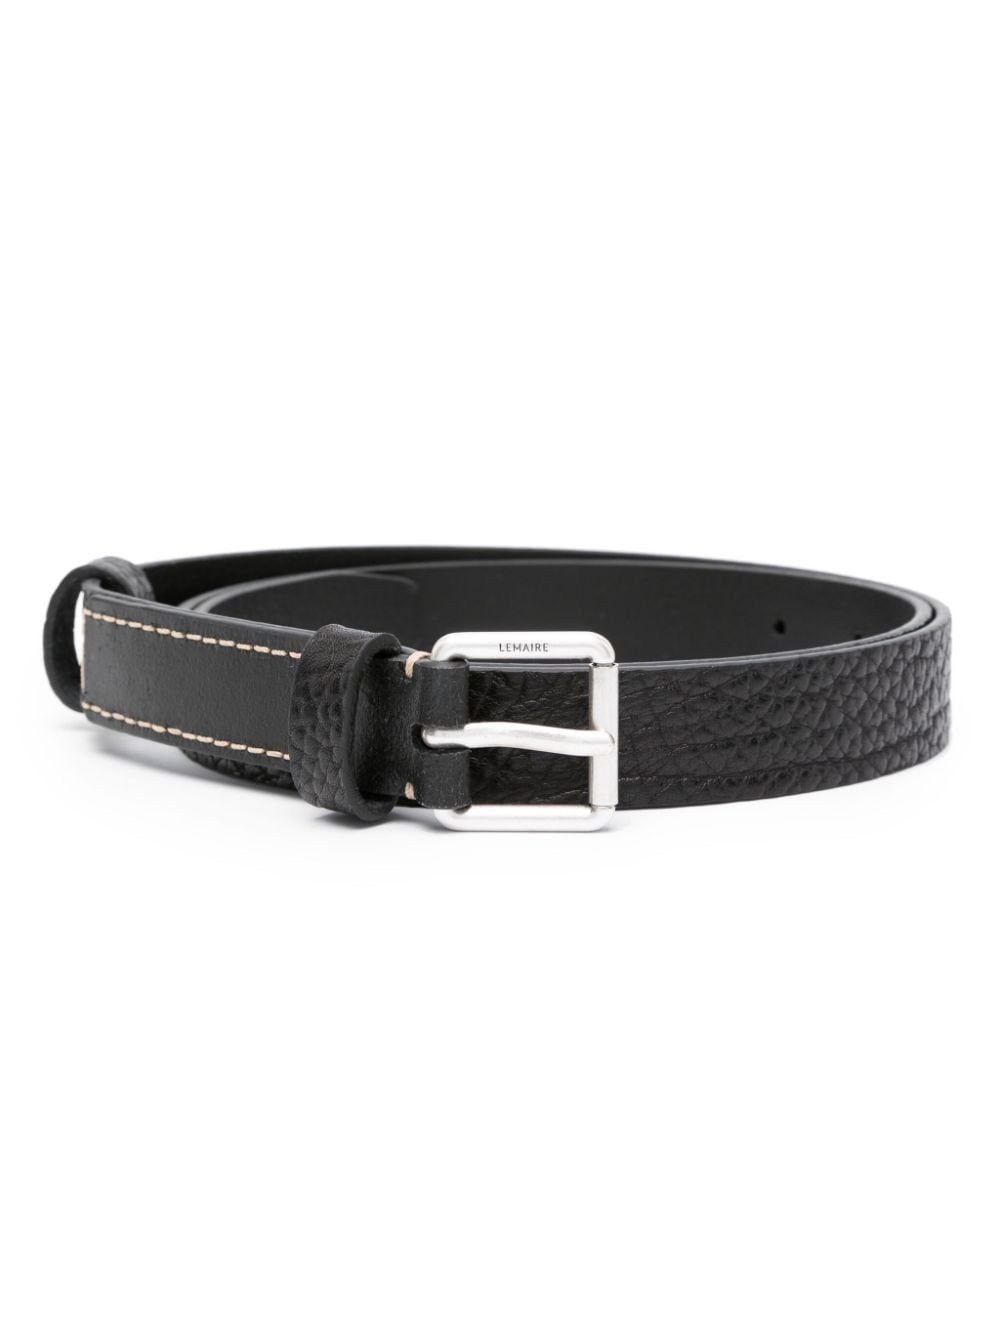 logo-engraved buckle leather belt - 1